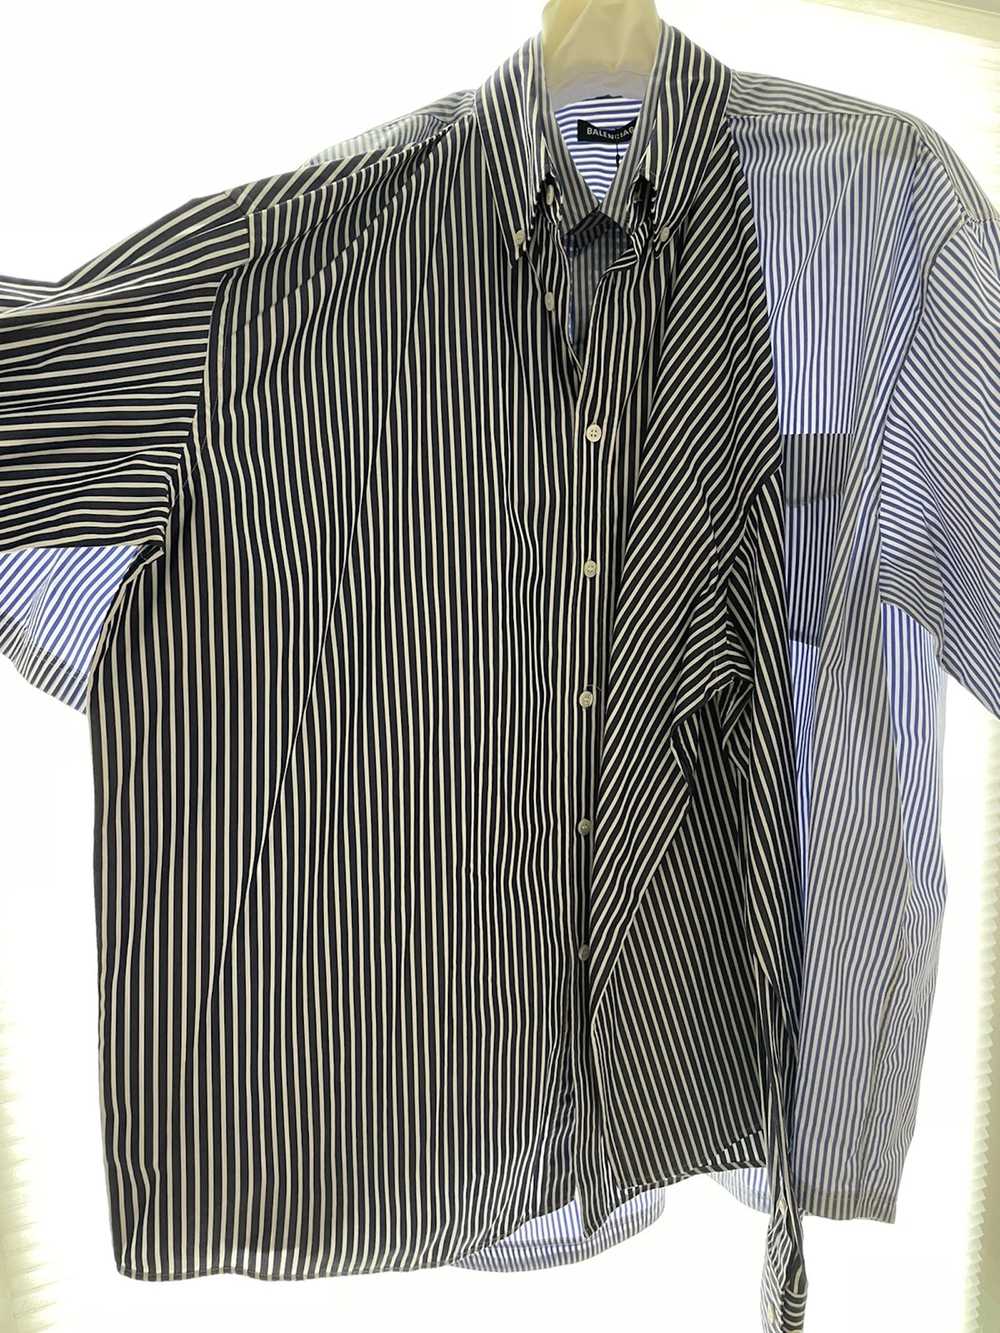 Balenciaga Balenciaga SS18 Double Shirt Size 38 L - image 5